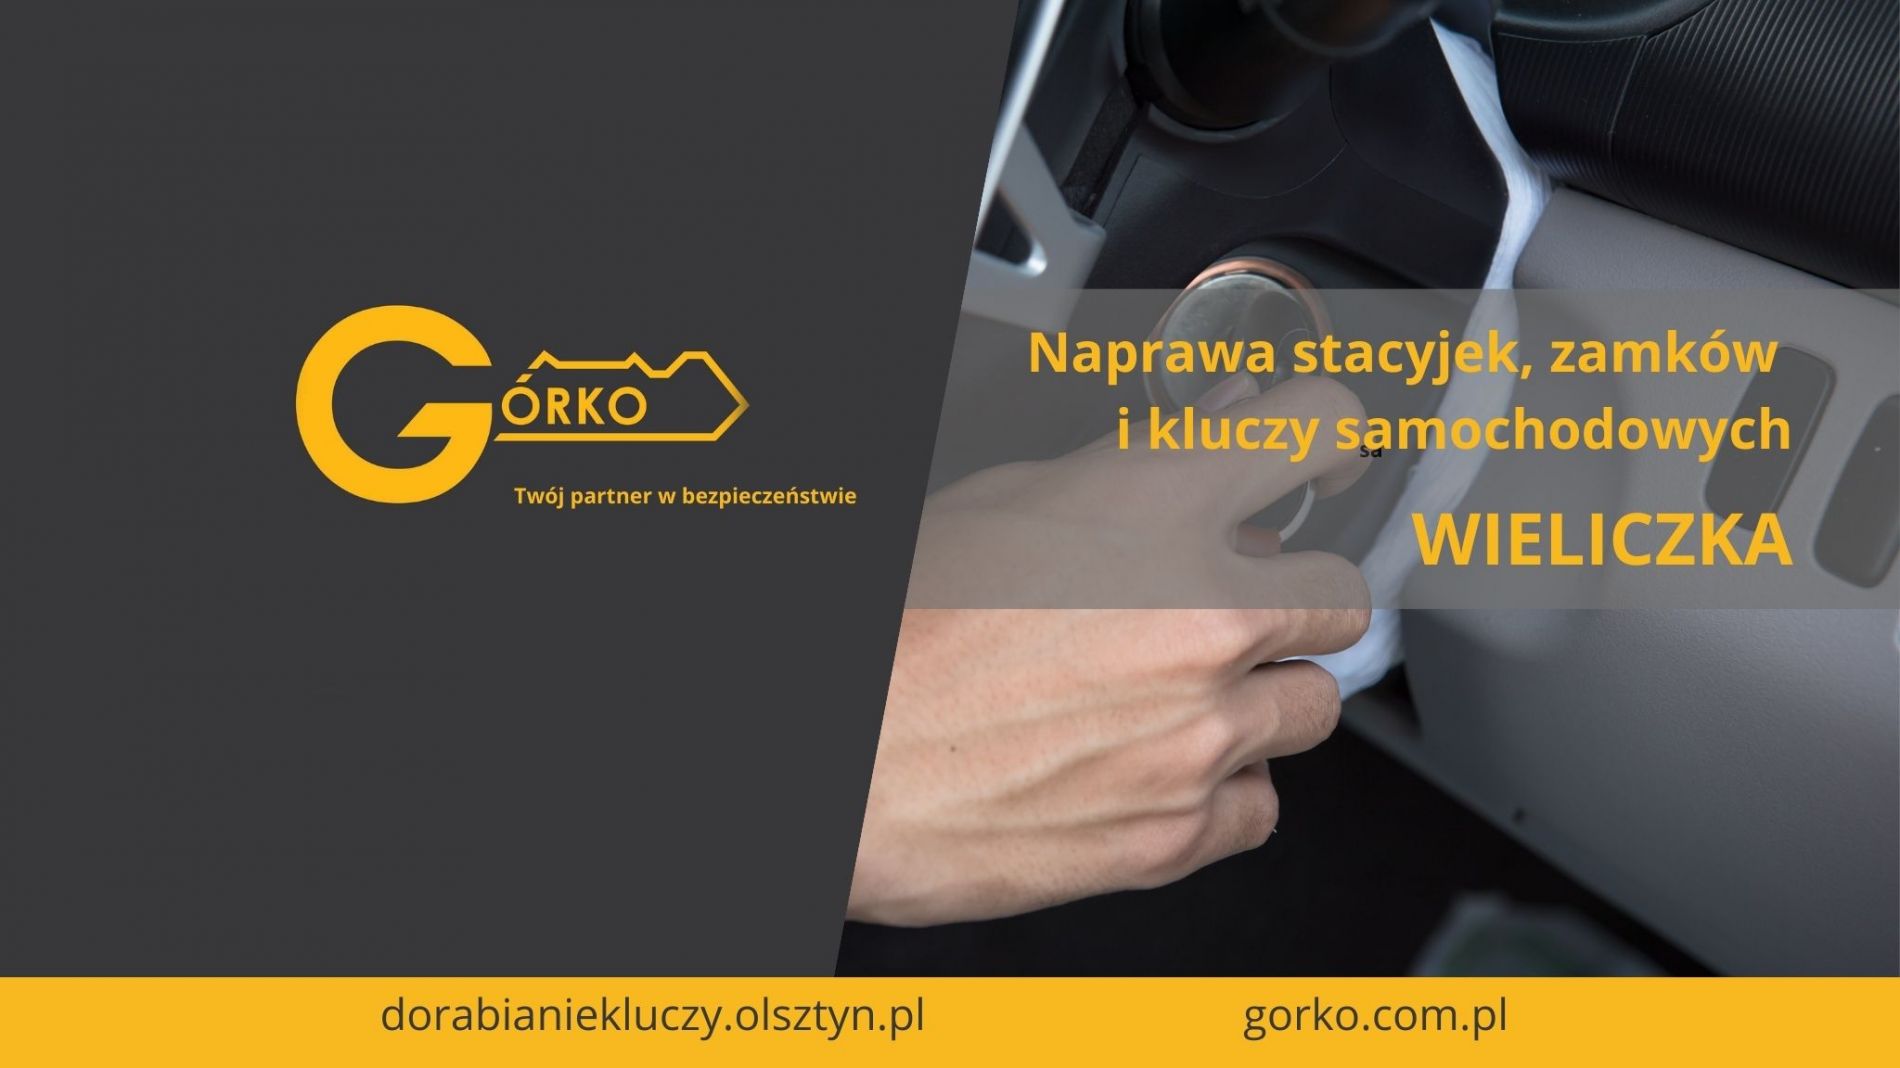 Naprawa stacyjek, zamków i kluczy samochodowych – Wieliczka (Usługa zdalna)